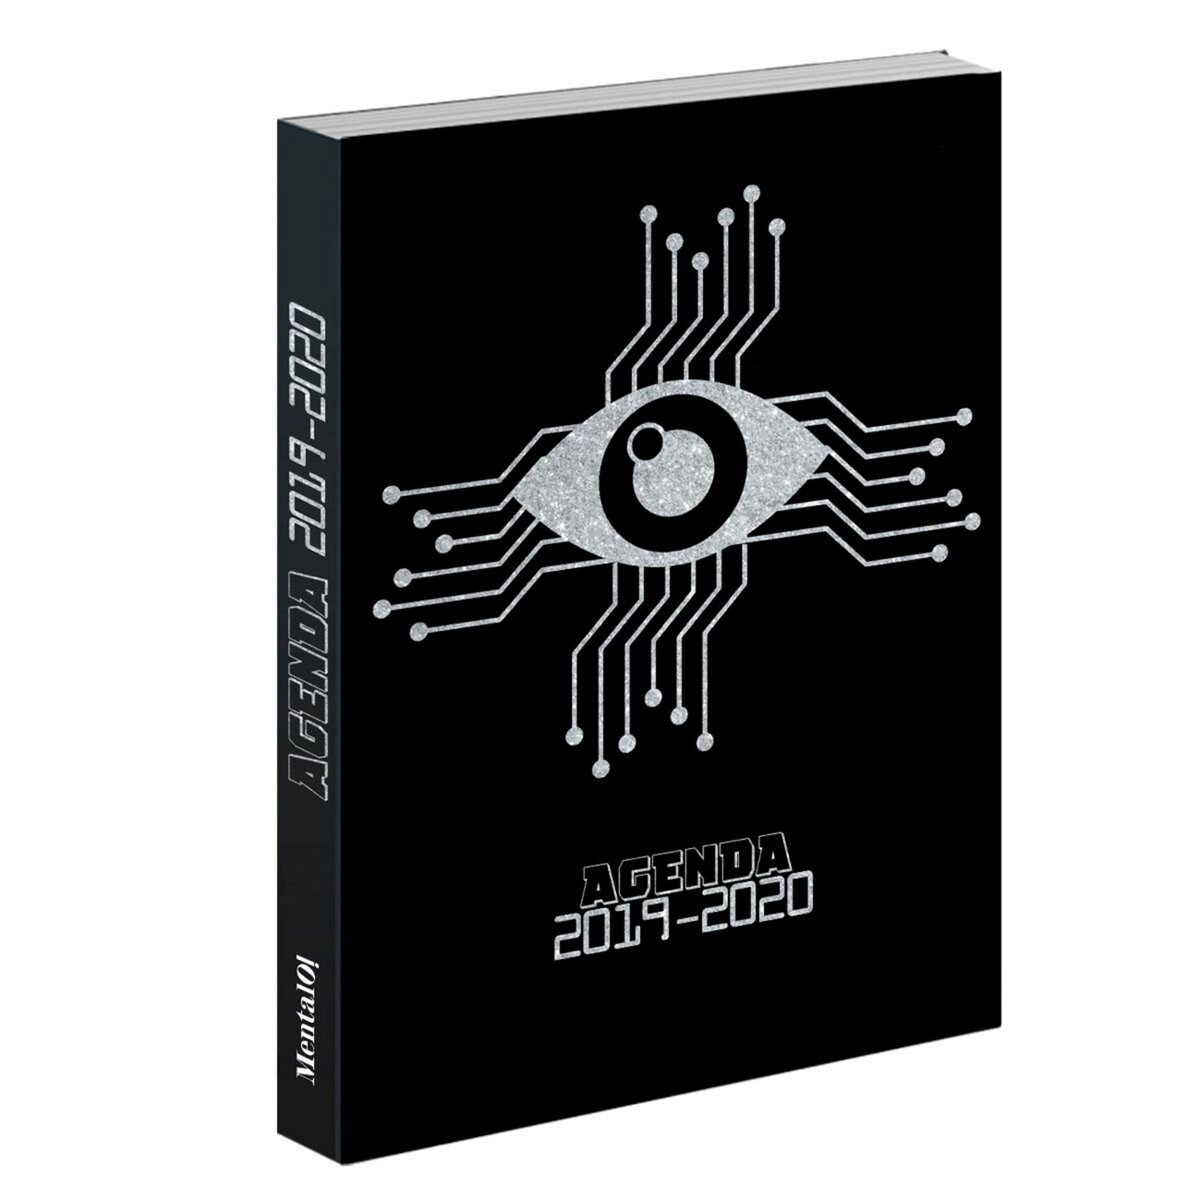  Agenda scolaire journalier 320 pages - couverture cartonnée molletonée - Metalik noir et gris oeil 2019-2020